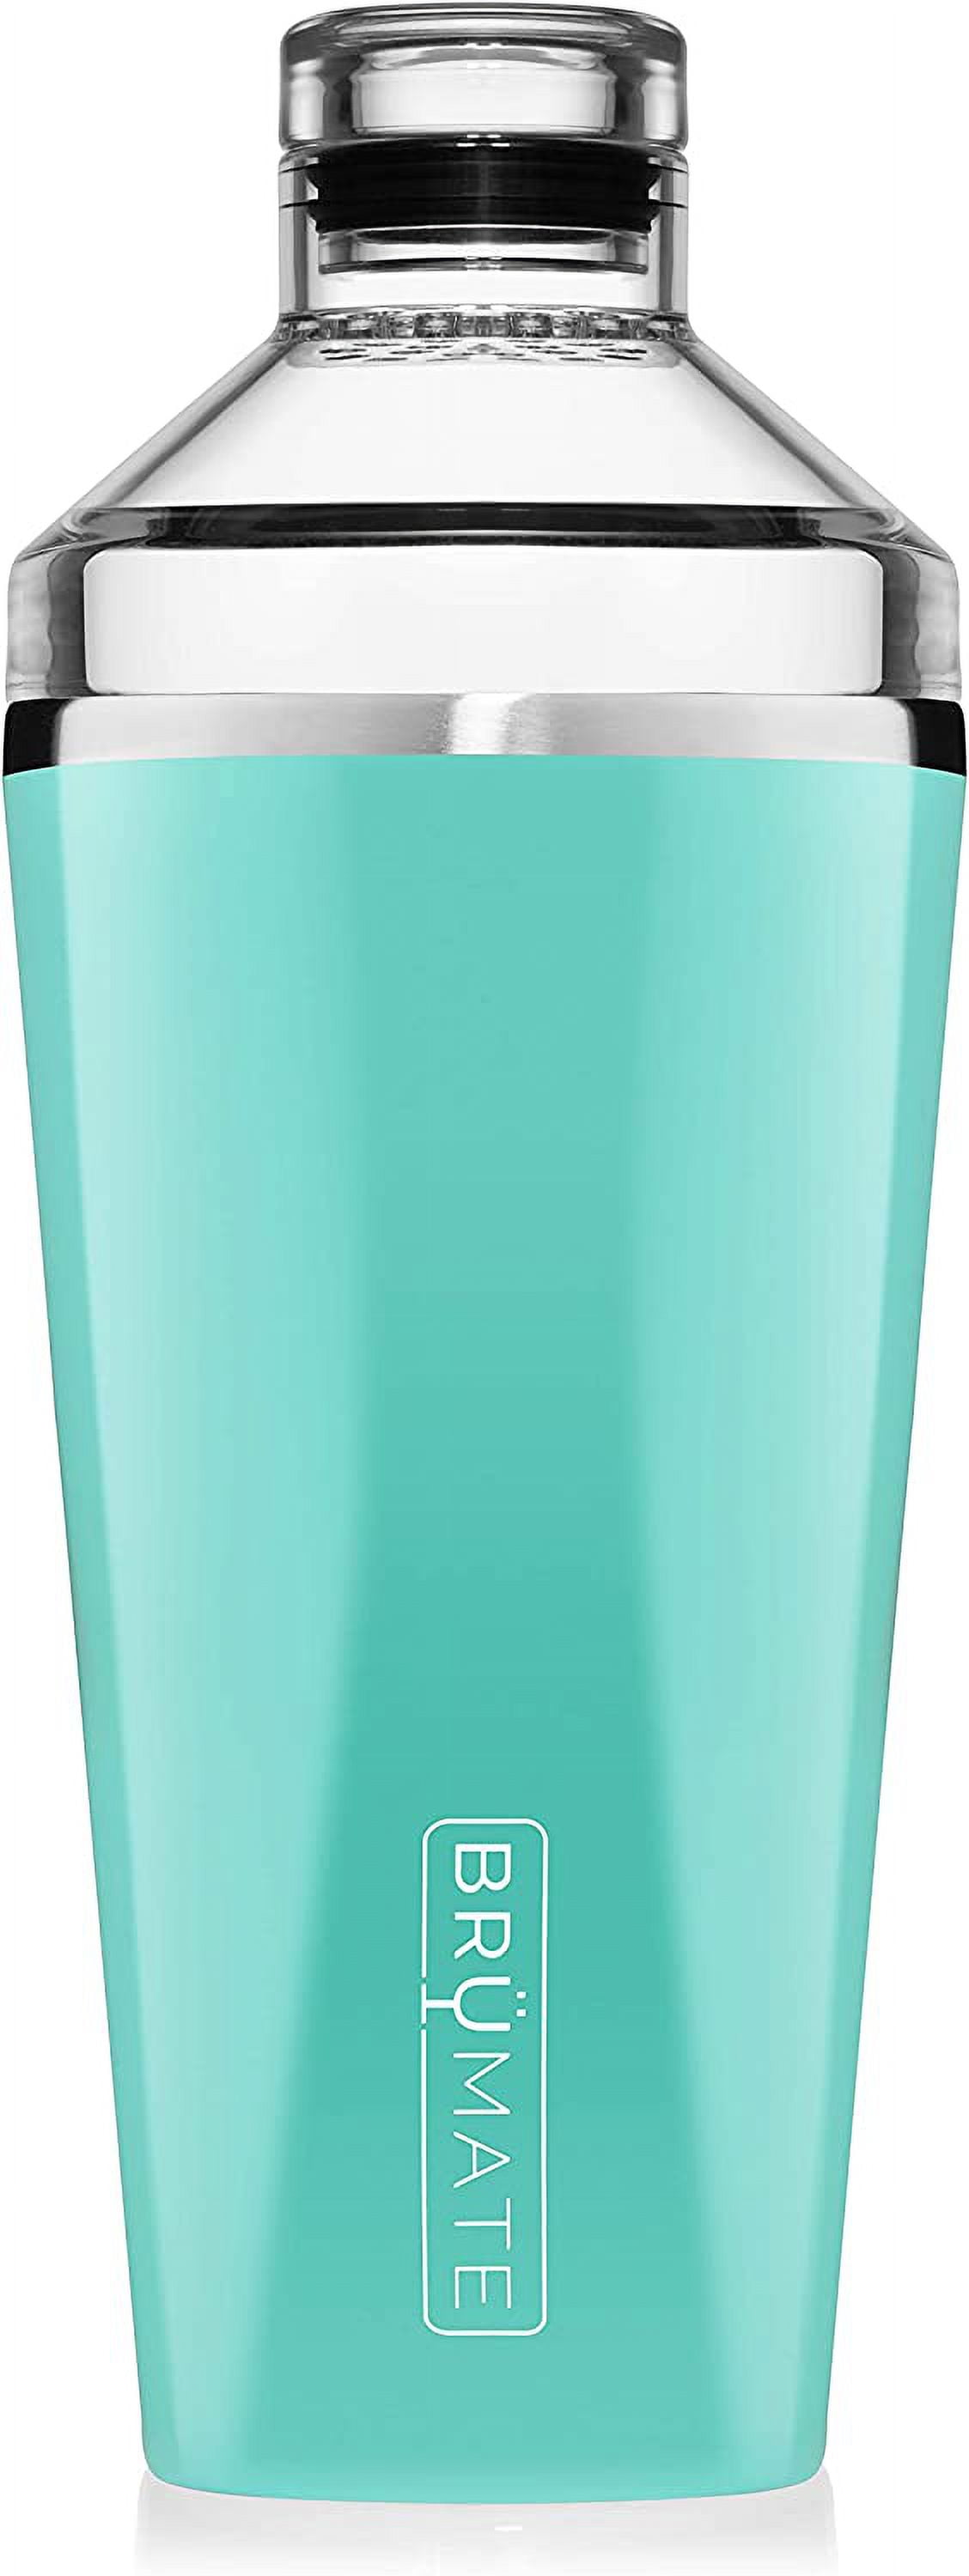 Cocktail Shaker Set –